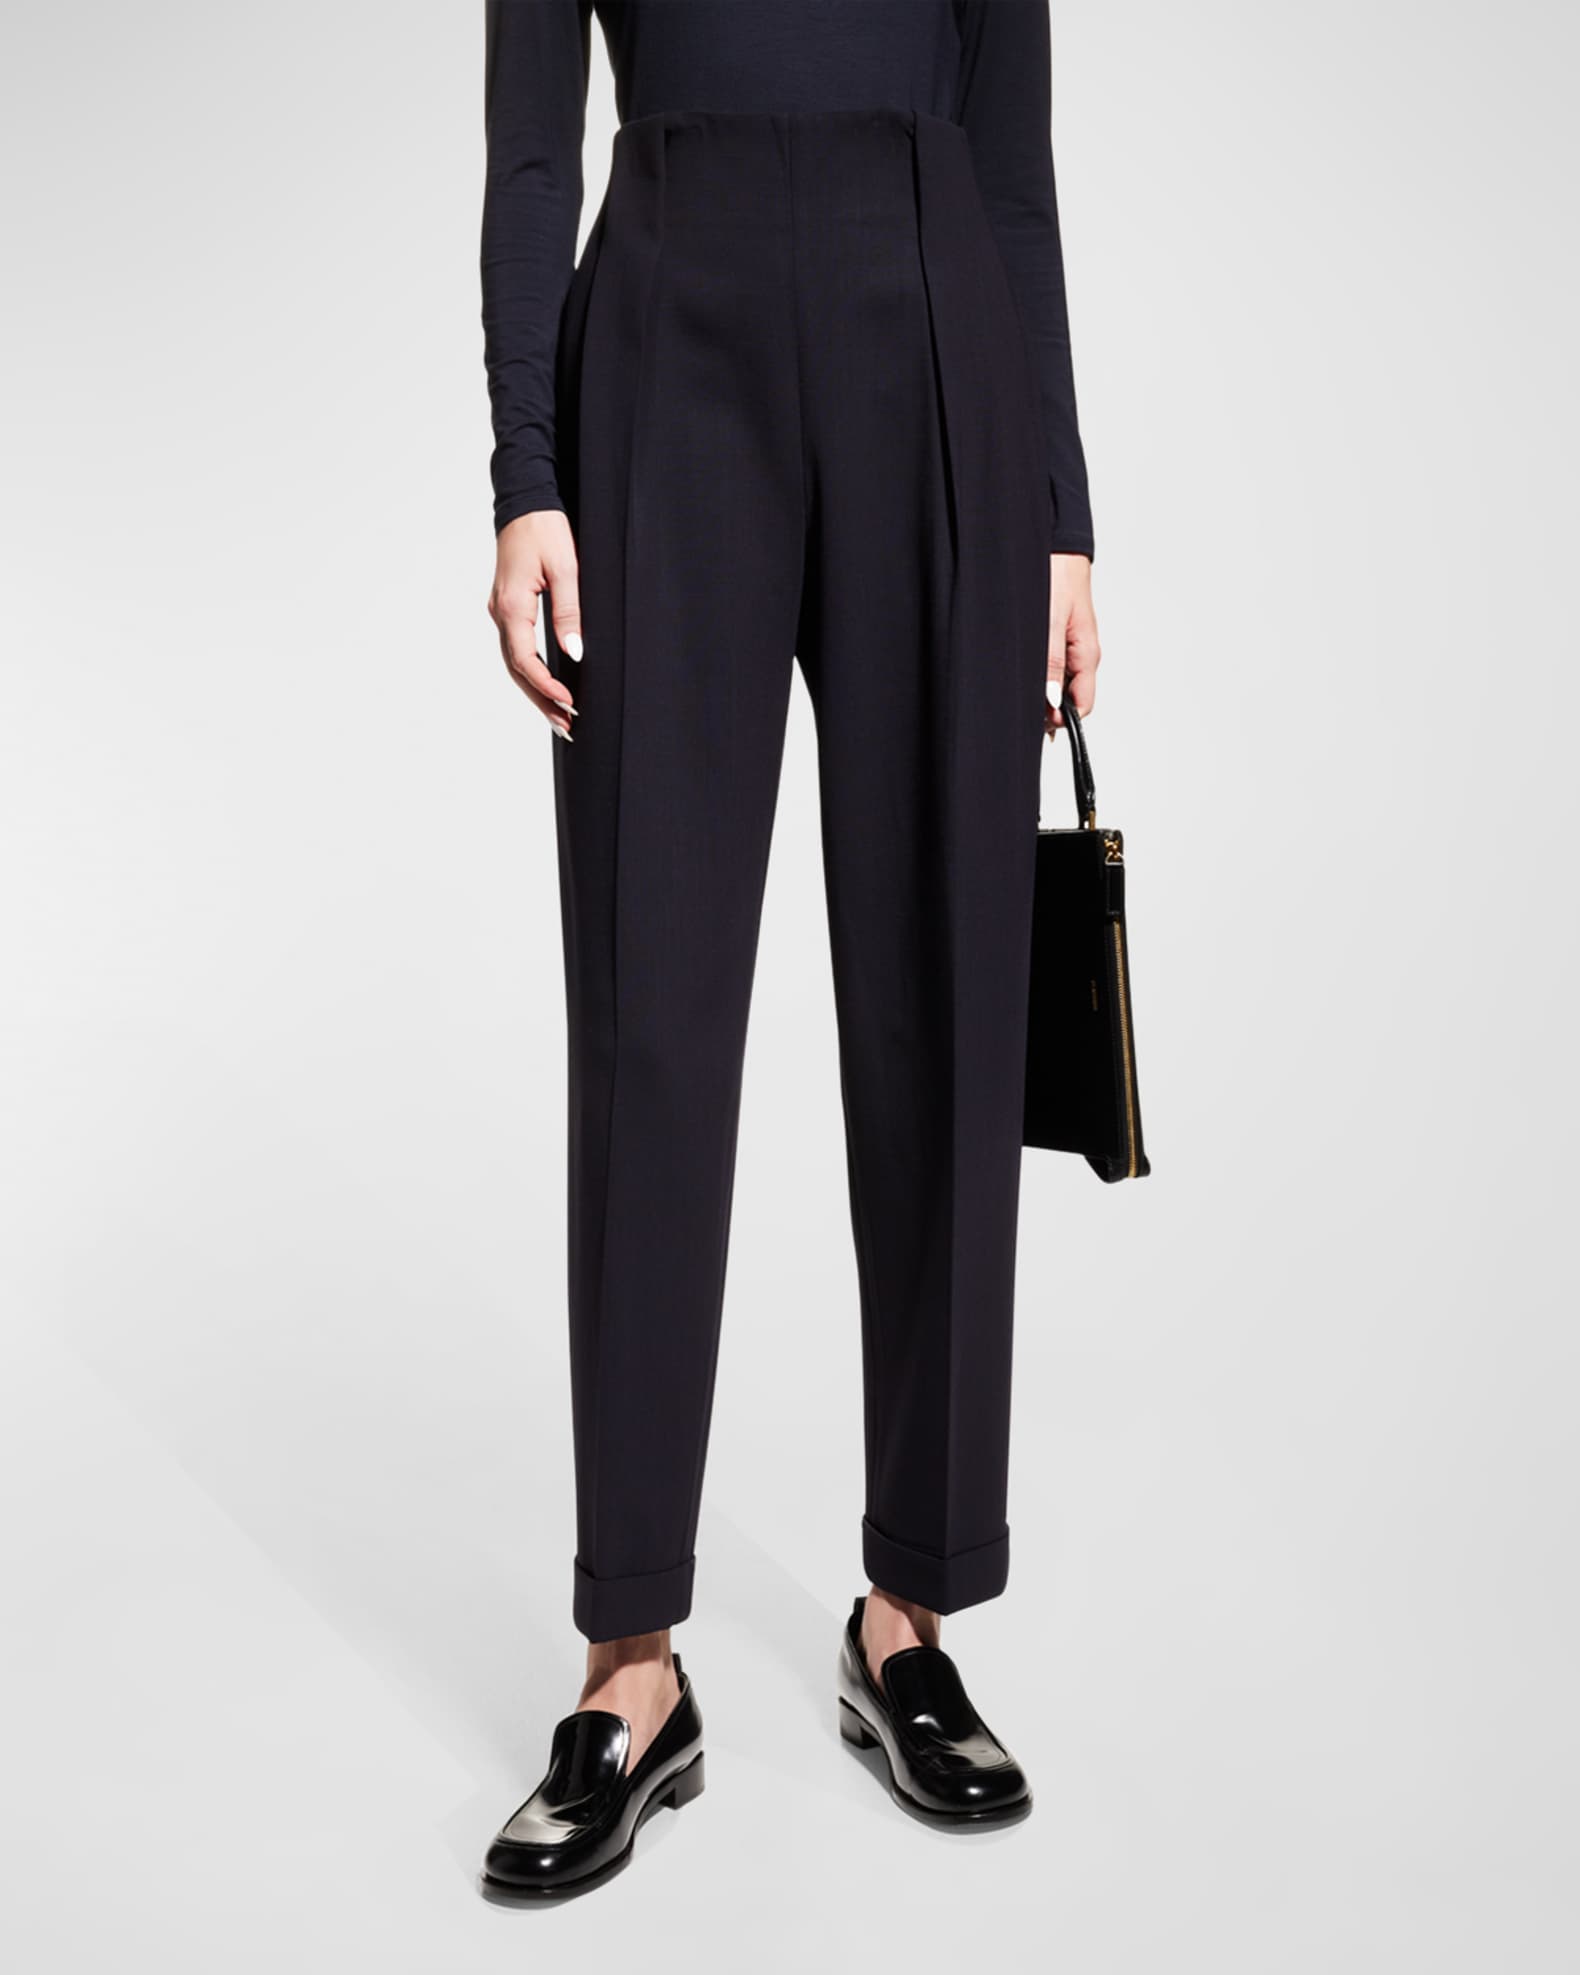 Louis Vuitton Uniform Womens Size 38 Black Work Career Trouser Pants